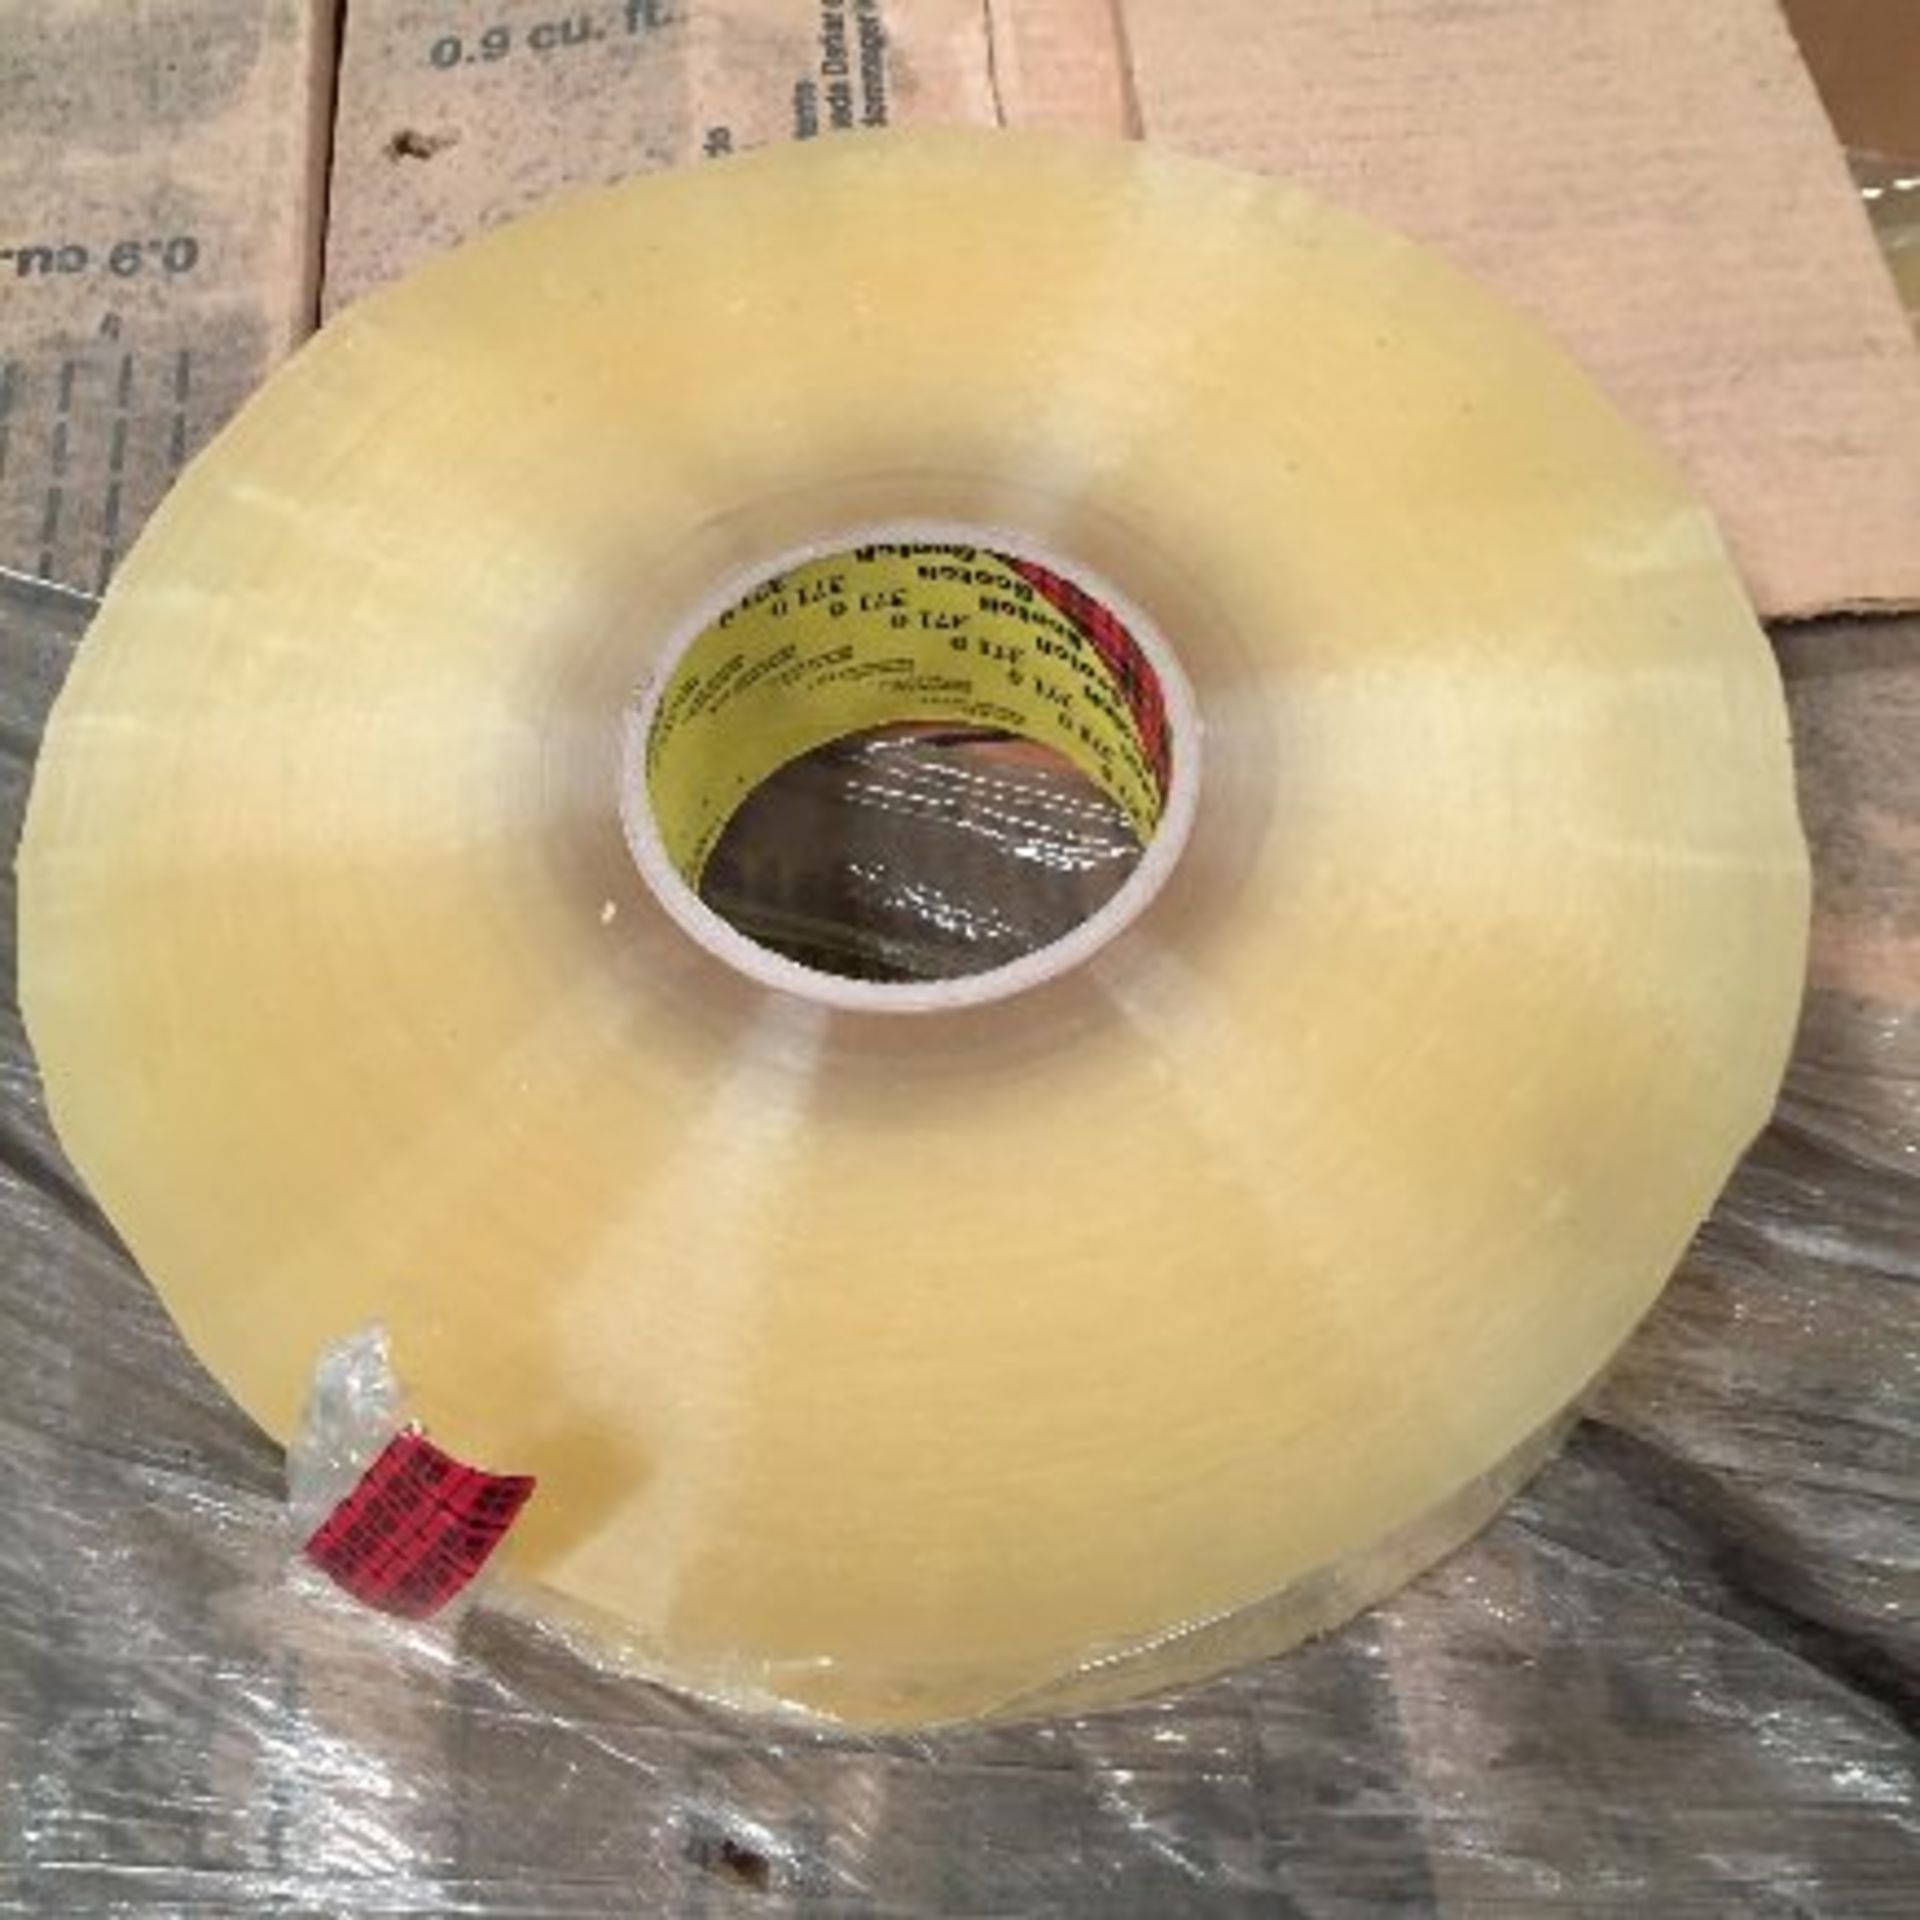 3M Clear box sealing tape, Approx. 288 rolls, 48mm x 914m rolls, NIB